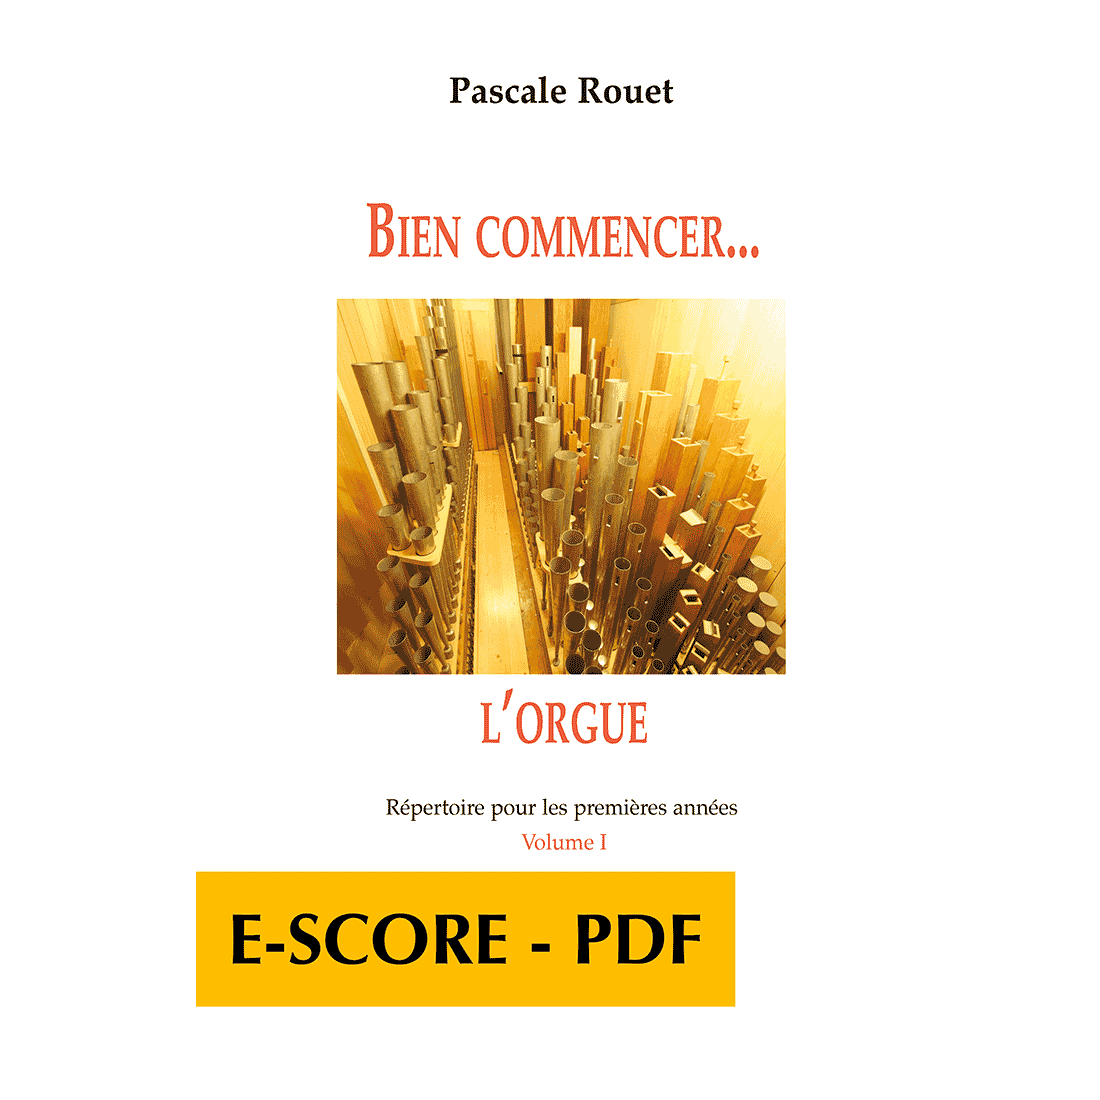 Bien commencer l'orgue - Répertoire pour les premières années - Vol. 1 - E-score PDF